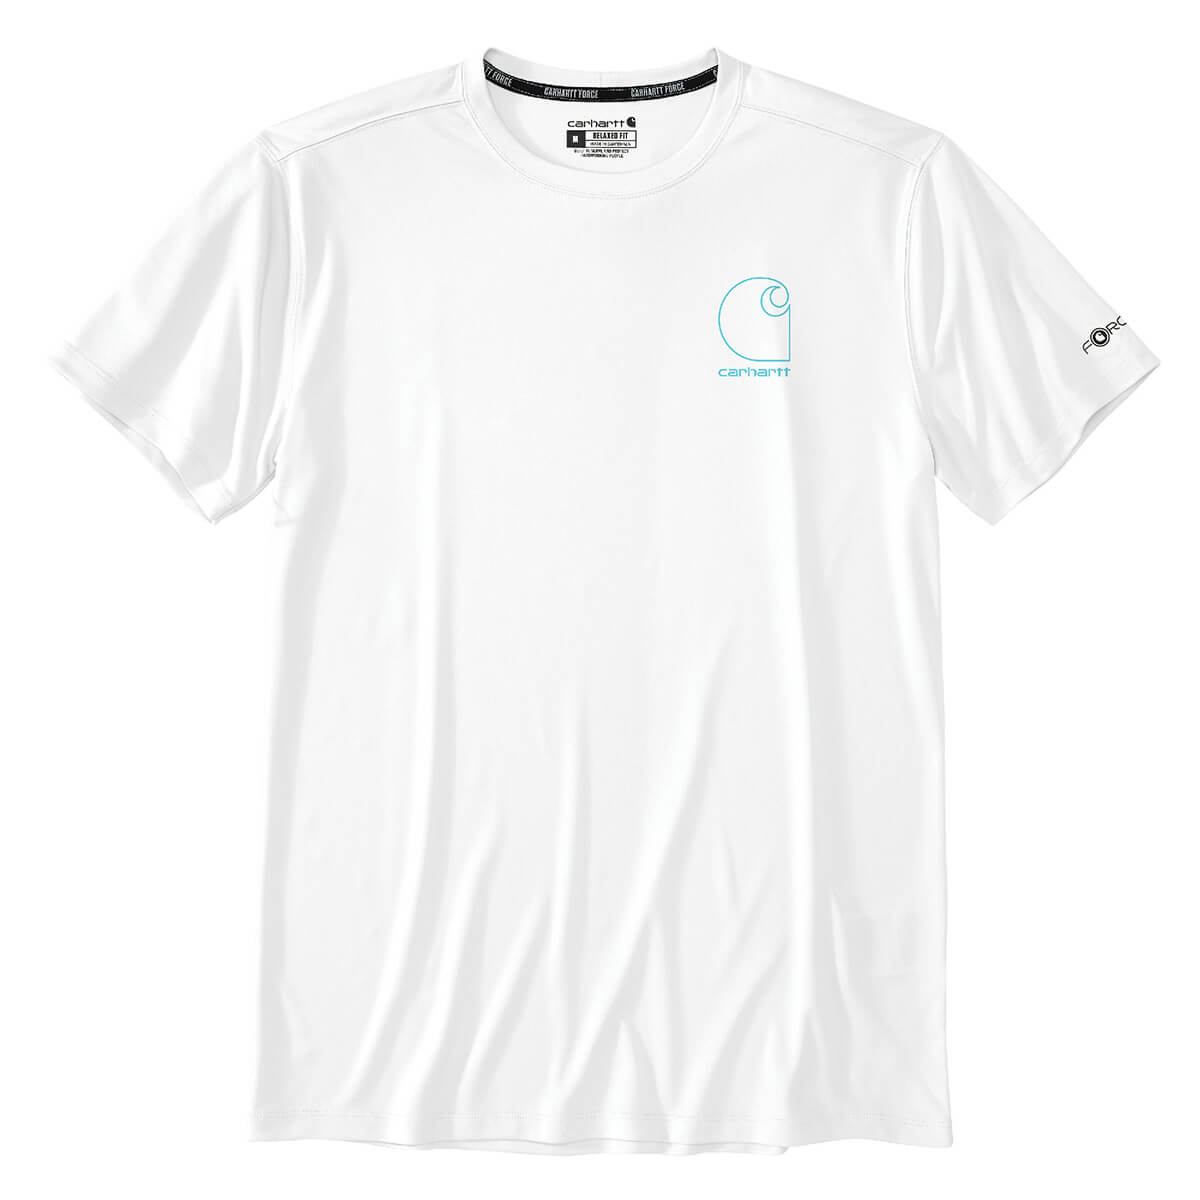 106163 - Carhartt Force Sun Defender™ Lightweight Short-Sleeve Logo Graphic T-Shirt